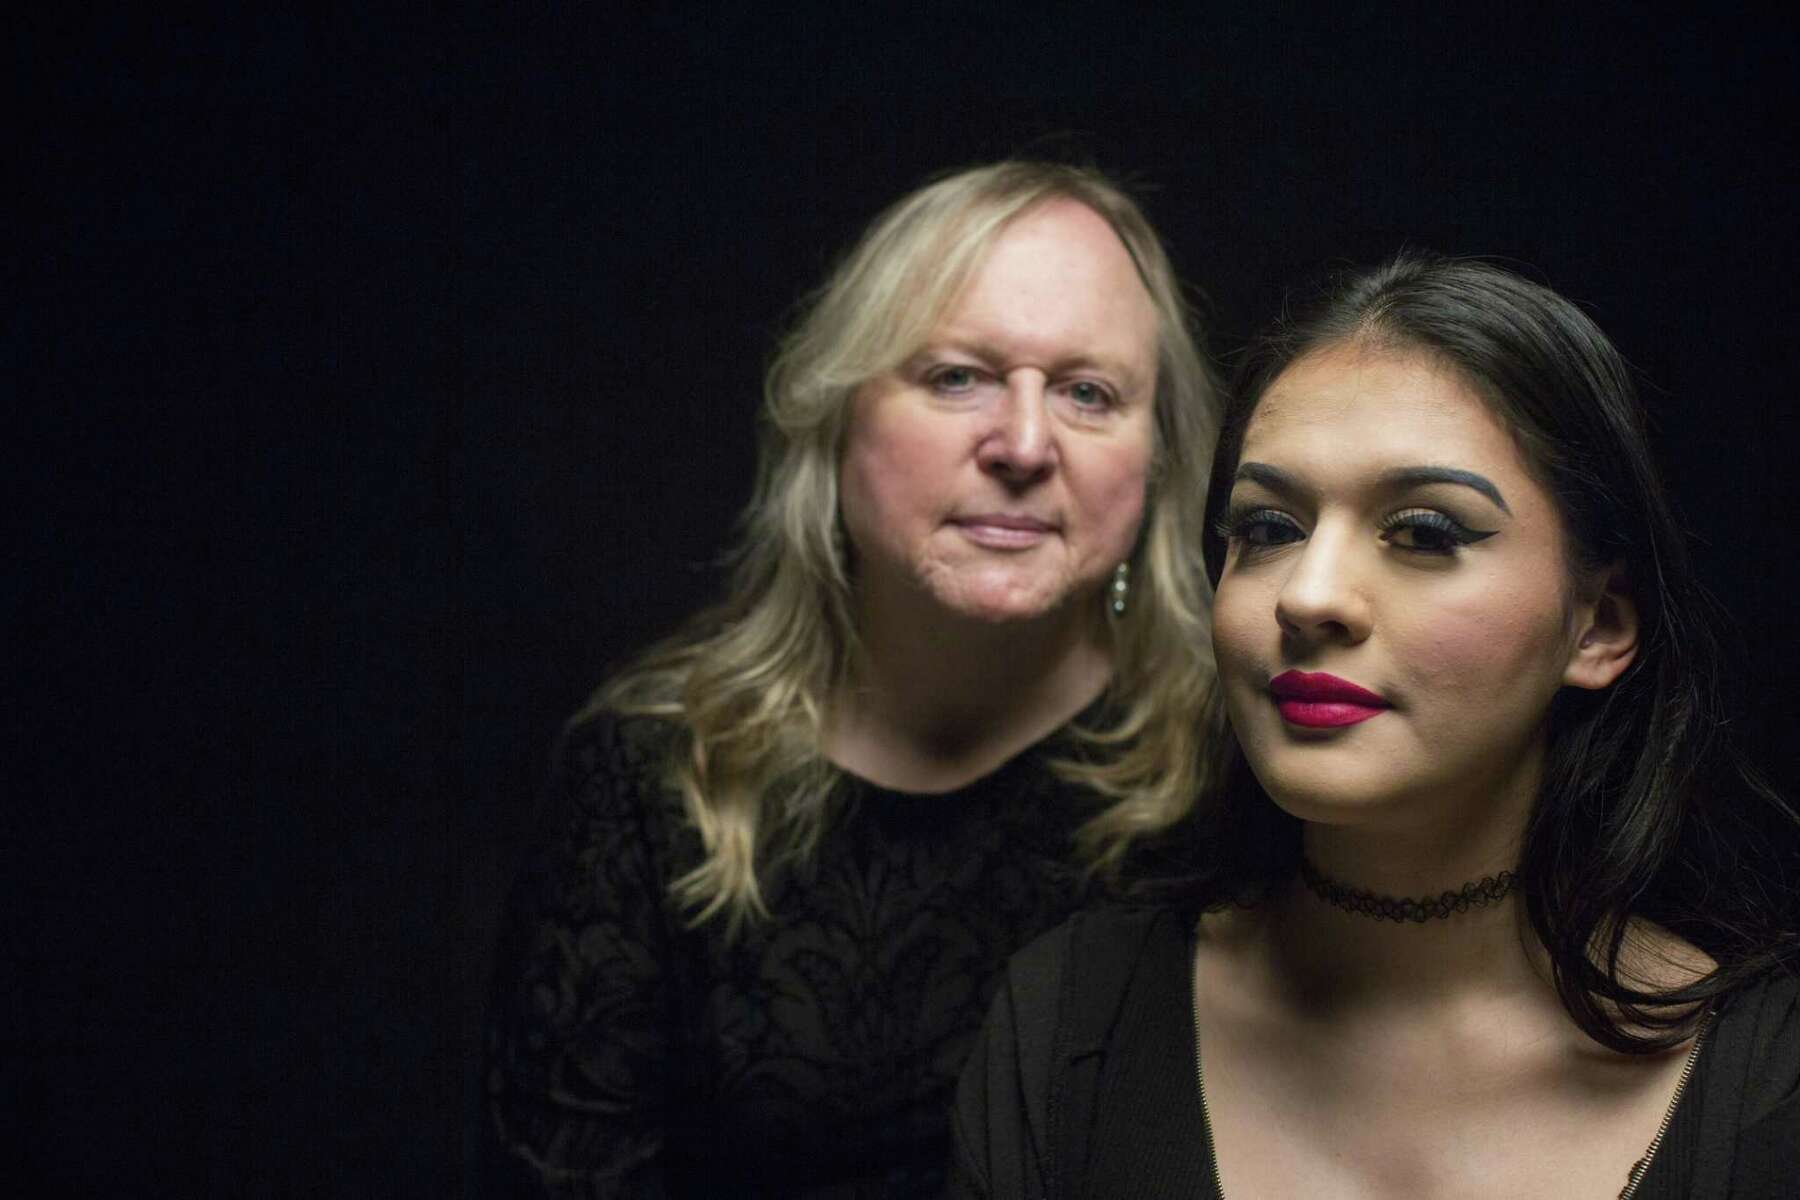 Two generations of trans women learn